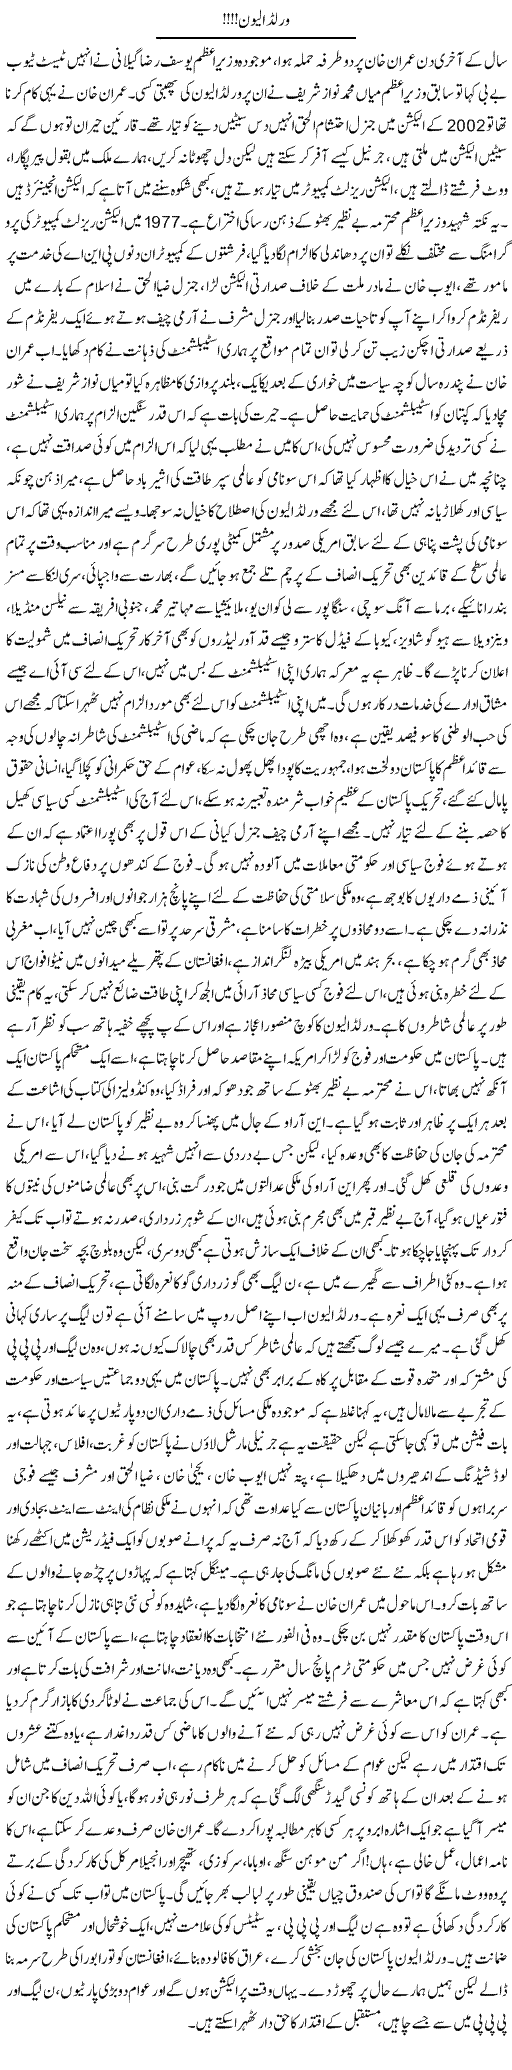 Pakistan's Politics Express Column Asadullah Ghalib 2 January 2012